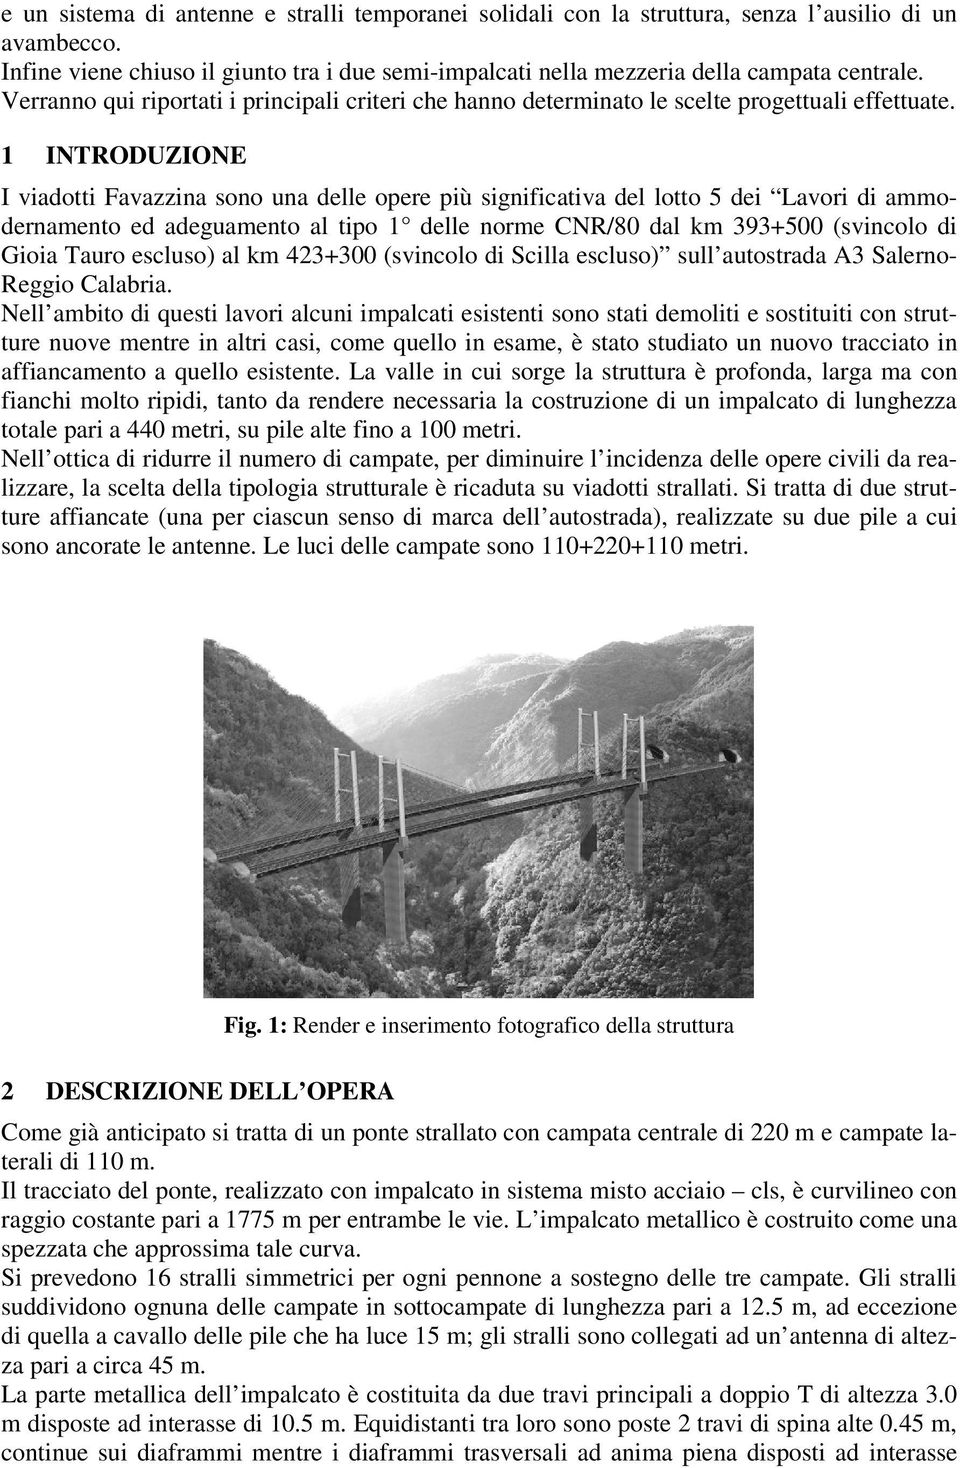 1 INTRODUZIONE I viadotti Favazzina sono una delle opere più significativa del lotto 5 dei Lavori di ammodernamento ed adeguamento al tipo 1 delle norme CNR/80 dal km 393+500 (svincolo di Gioia Tauro